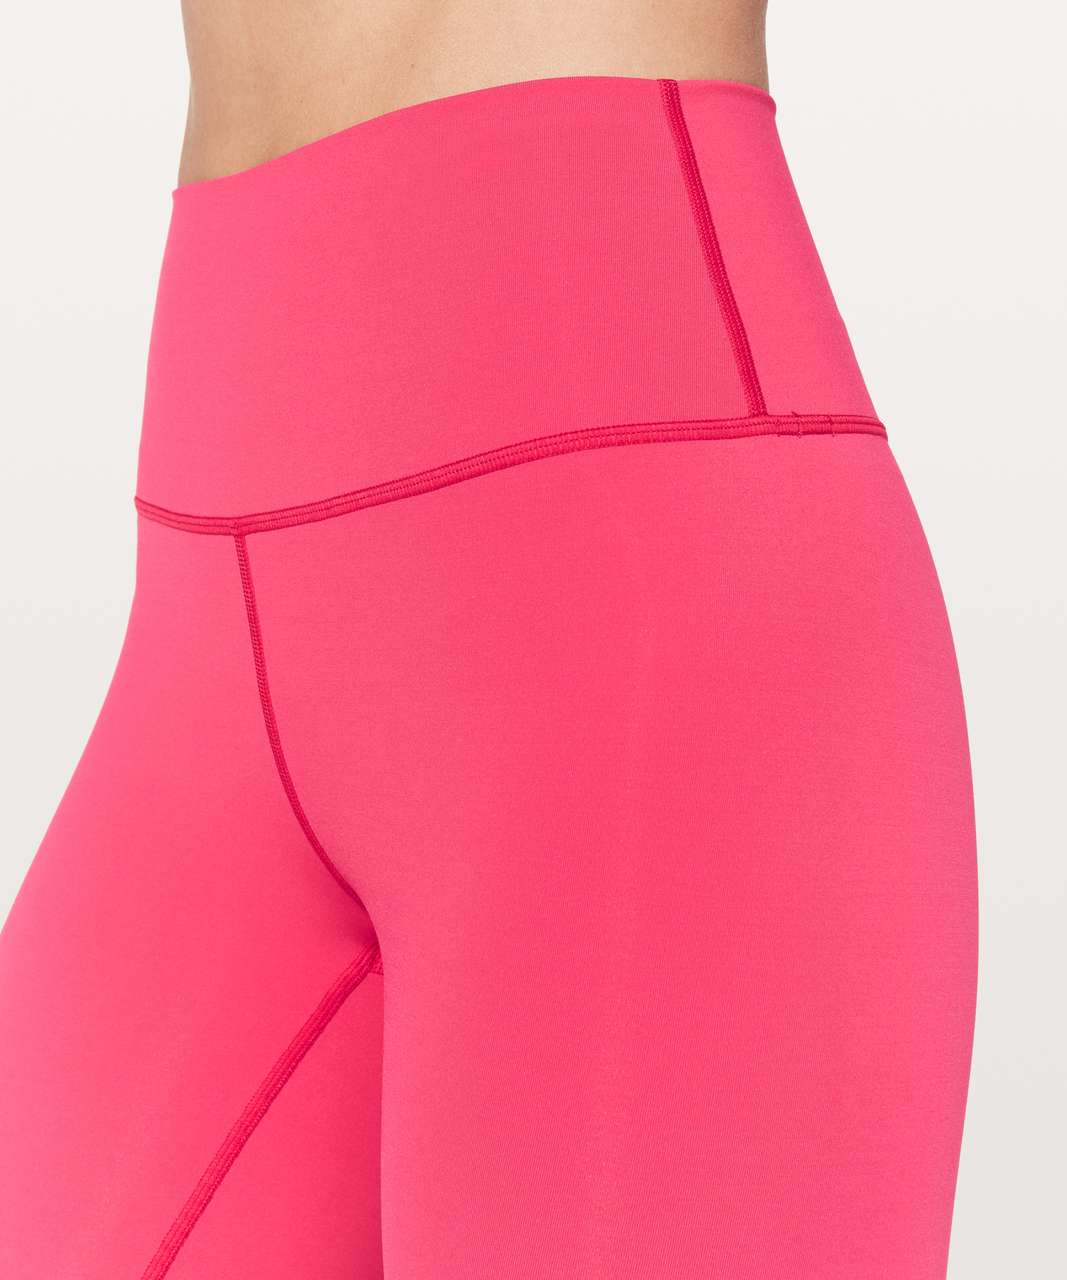 Lululemon Color Me Ombré Leggings Pink Size XS - $29 (77% Off